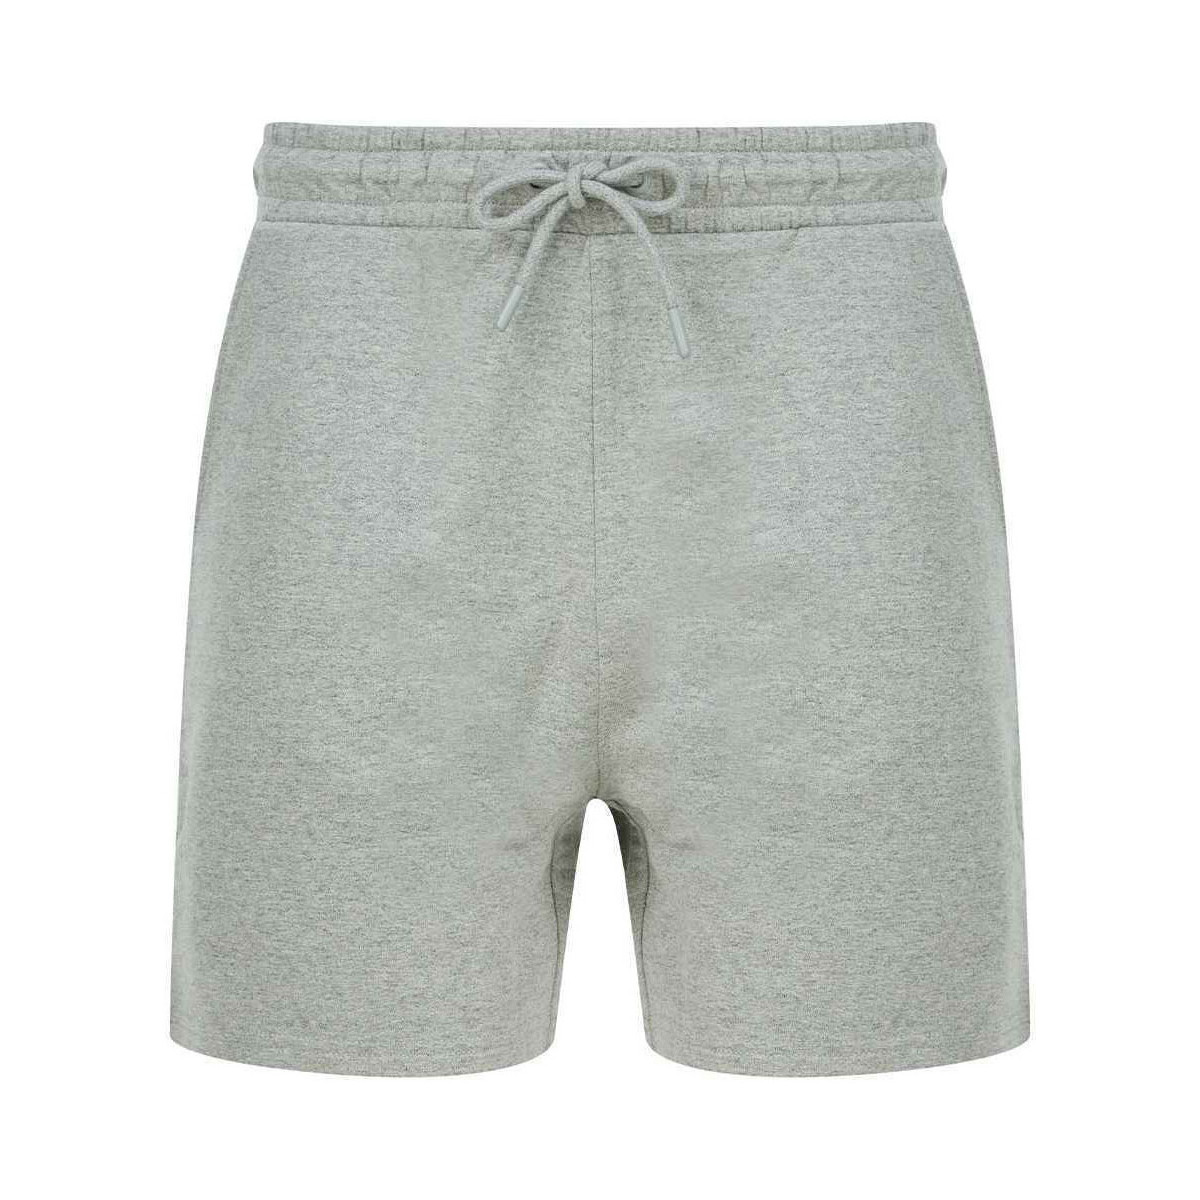 textil Shorts / Bermudas Sf SF432 Gris